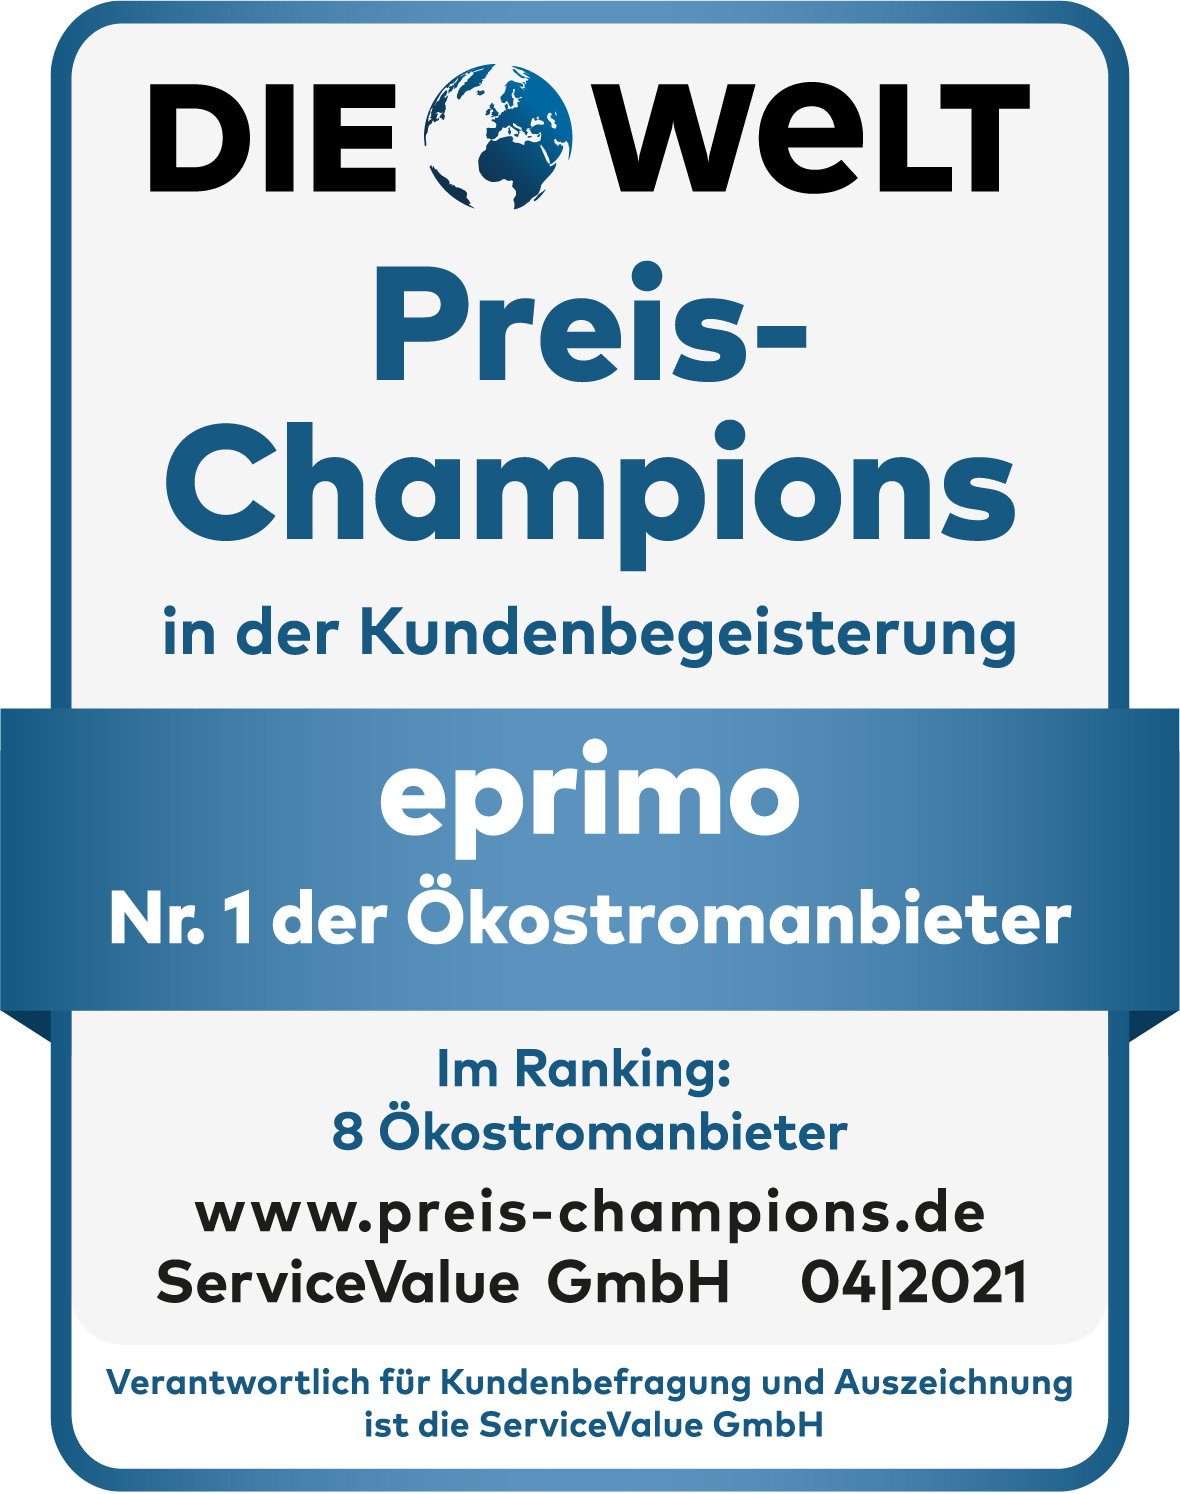 eprimo erneut „Preis-Champion“ bei Ökostrom und Ökogas